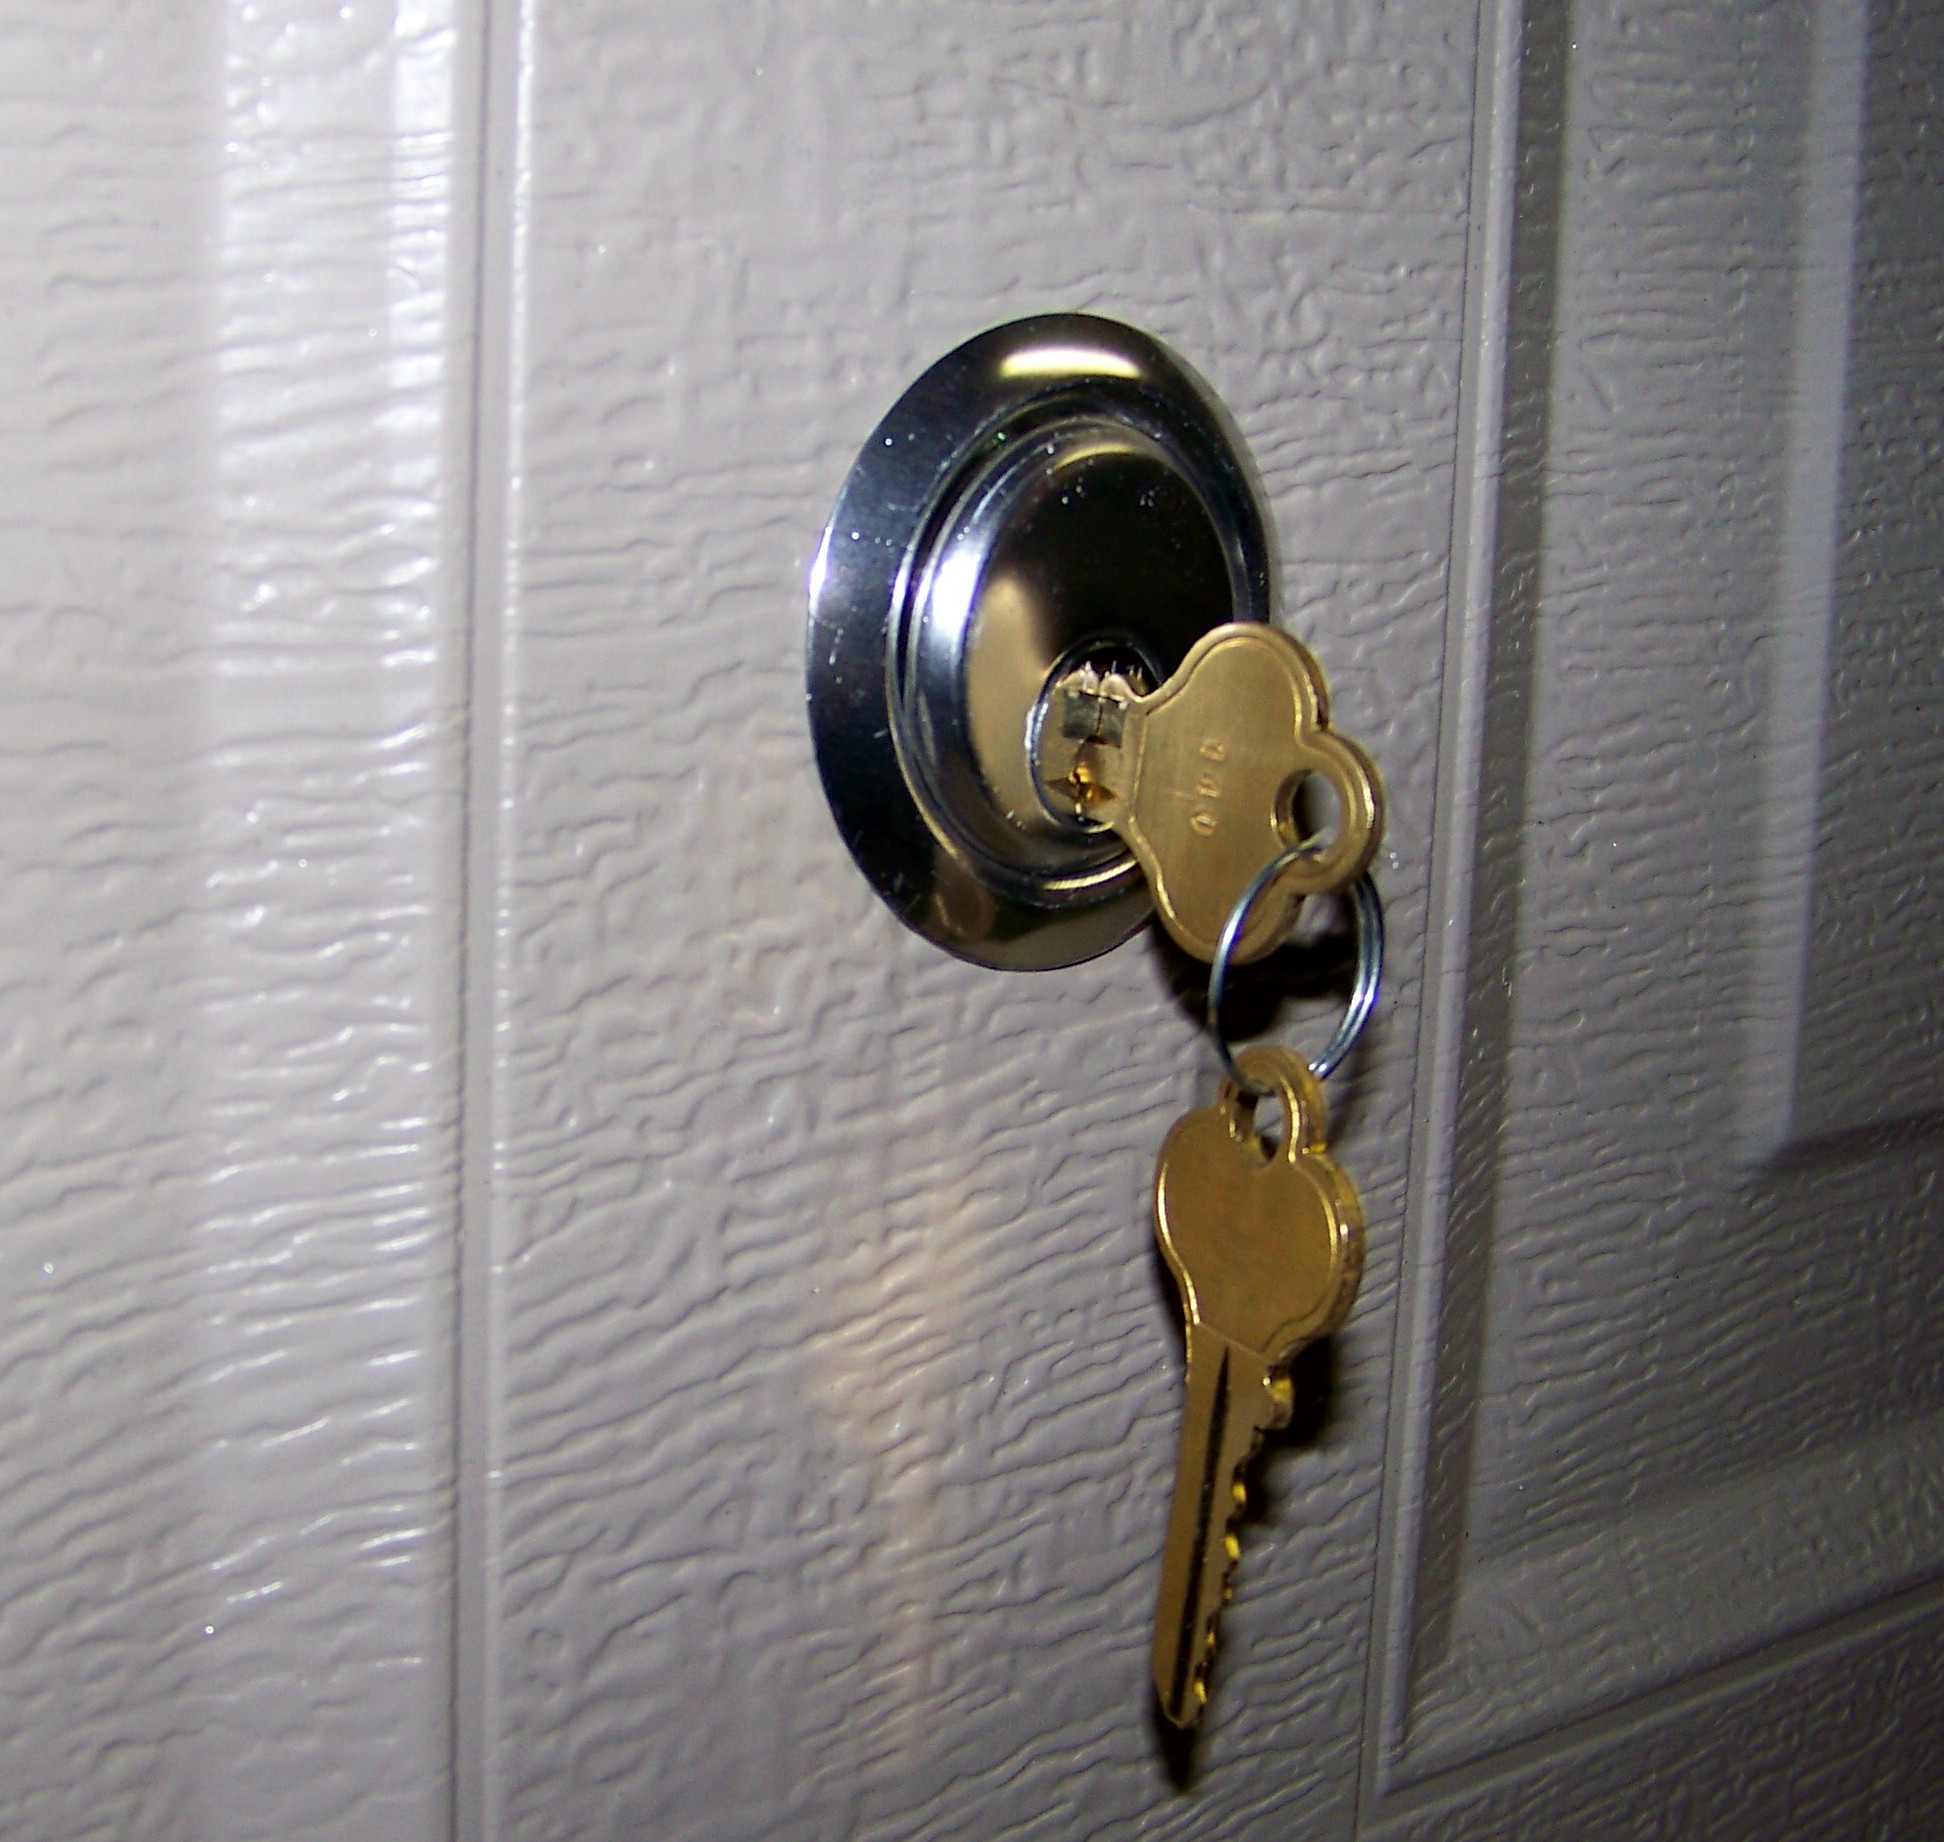  Garage Door Lock Internal with Simple Design